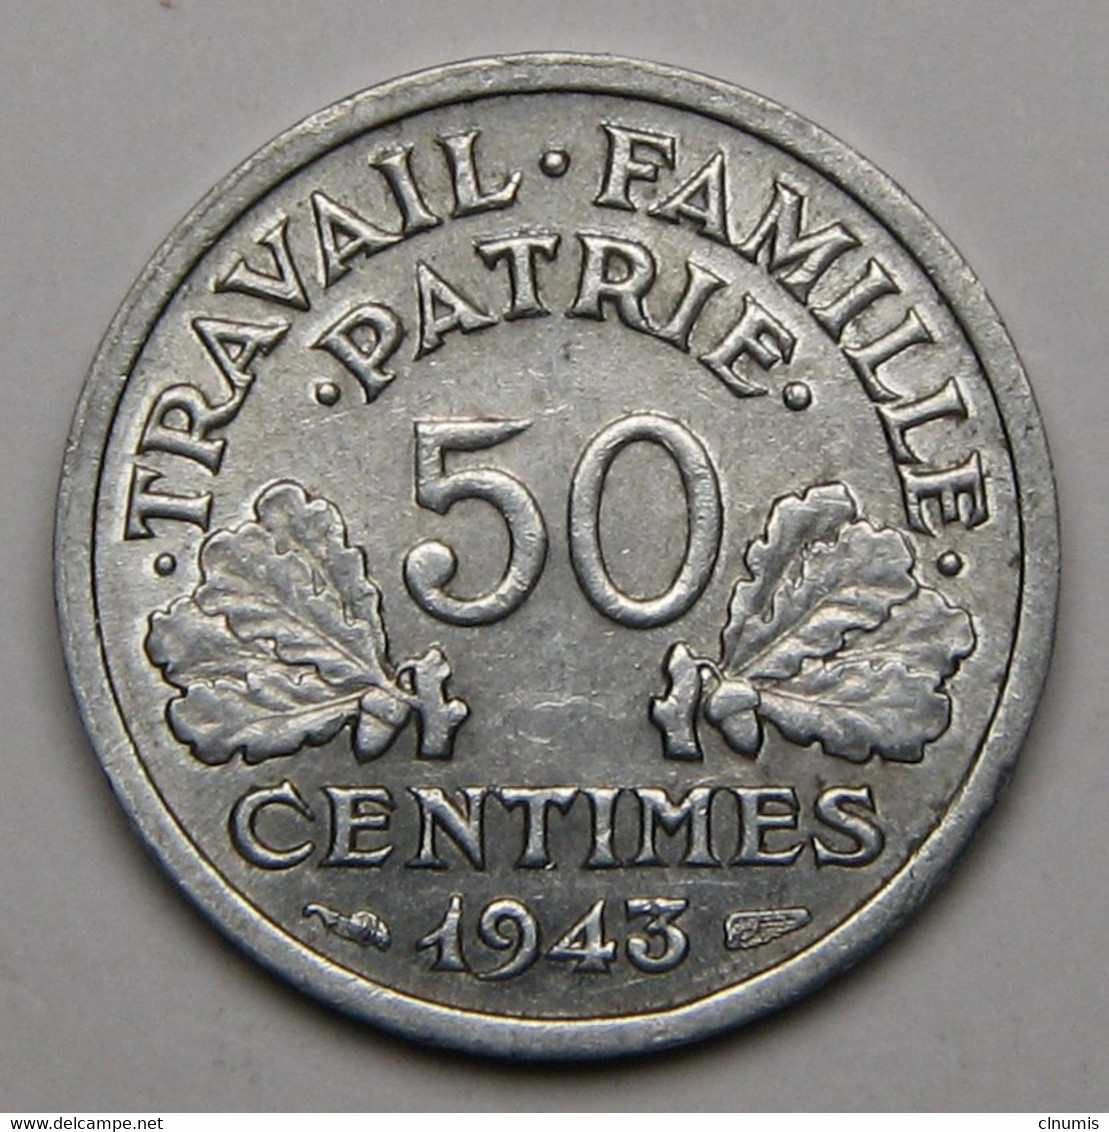 RARE 50 Centimes Francisque, Légère, Aluminium, 1943 B (Beaumont-le-Roger) - Etat Français - 50 Centimes